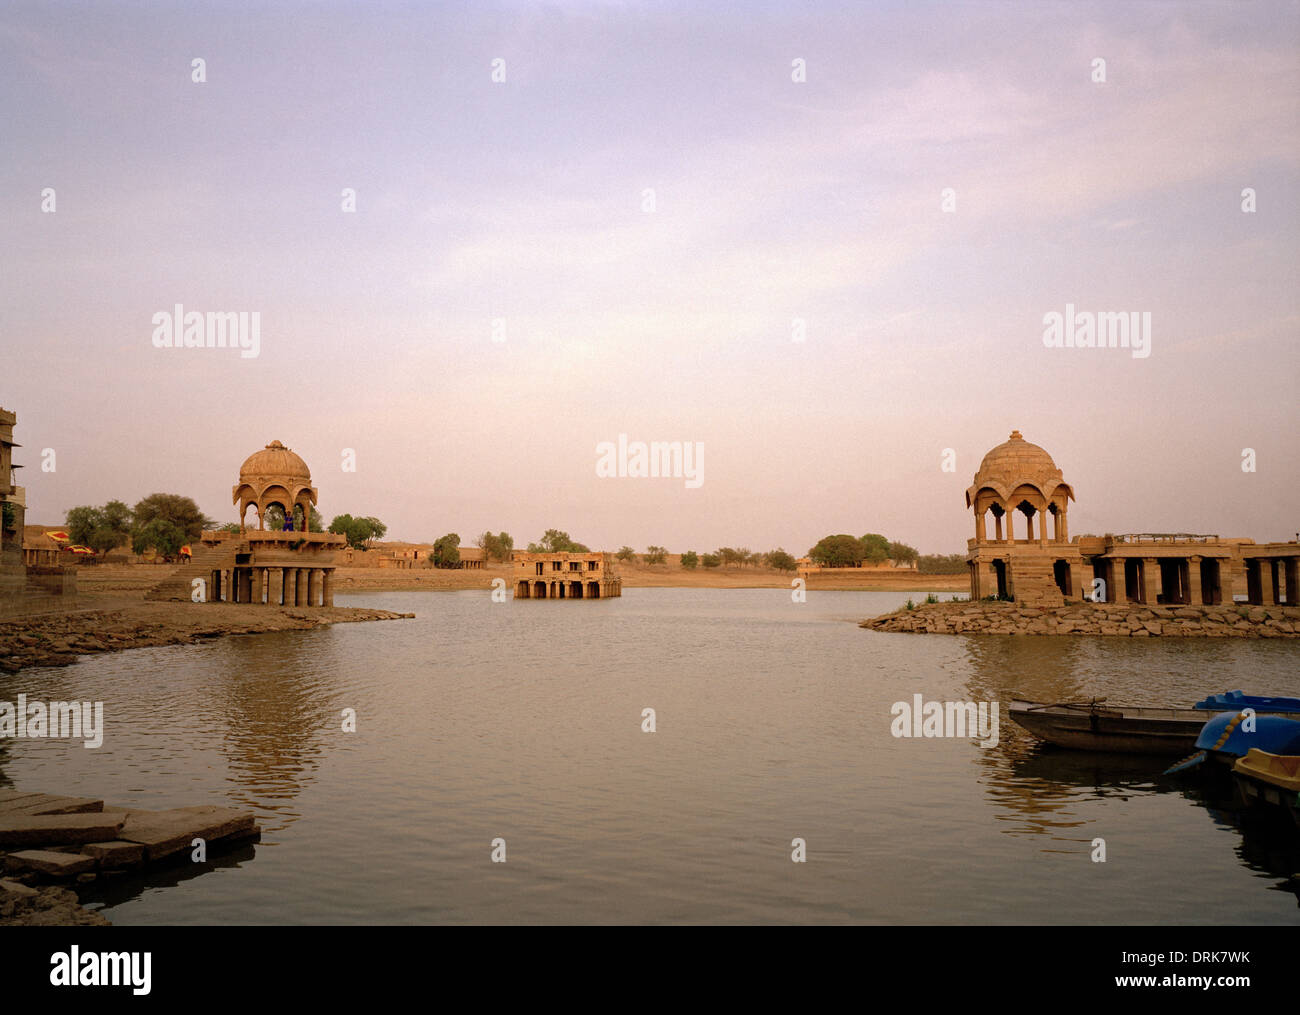 Gadisar Lake dans la région de Jaisalmer au Rajasthan en Inde en Asie du Sud. Paysage de sérénité tranquillité ciel paix Voyage Beauté Évasion Wanderlust Banque D'Images